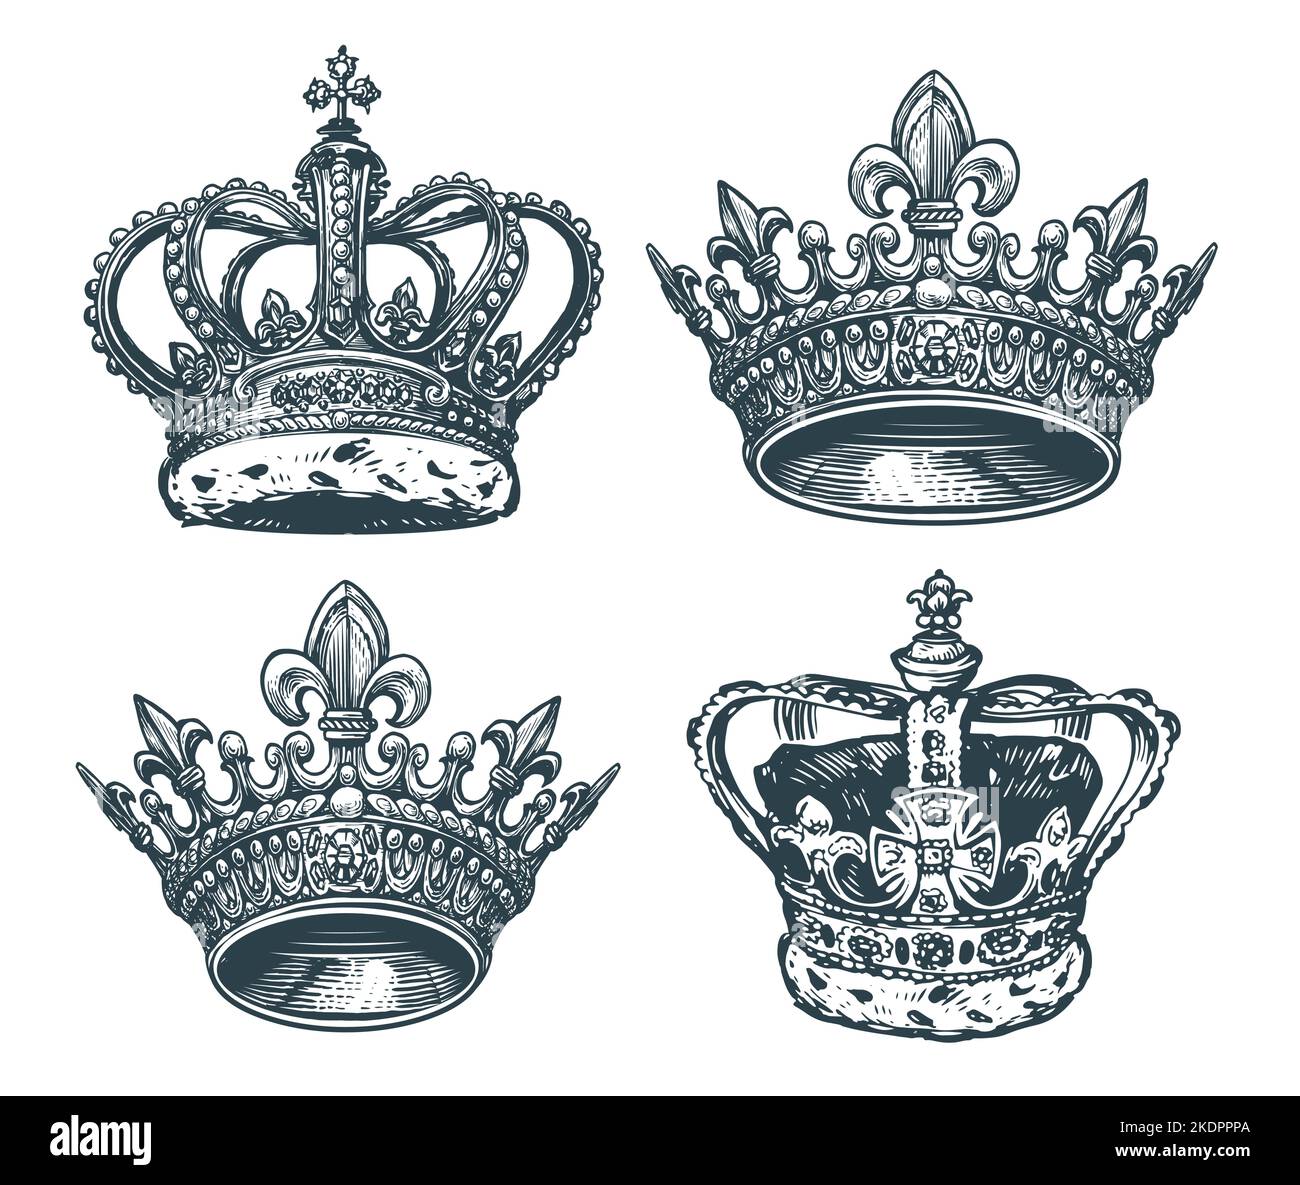 Königliche goldene Krone mit Edelsteinen. König, Königin Symbol. Handgezeichnete Skizzenvektor-Illustration im Vintage-Gravurstil Stock Vektor